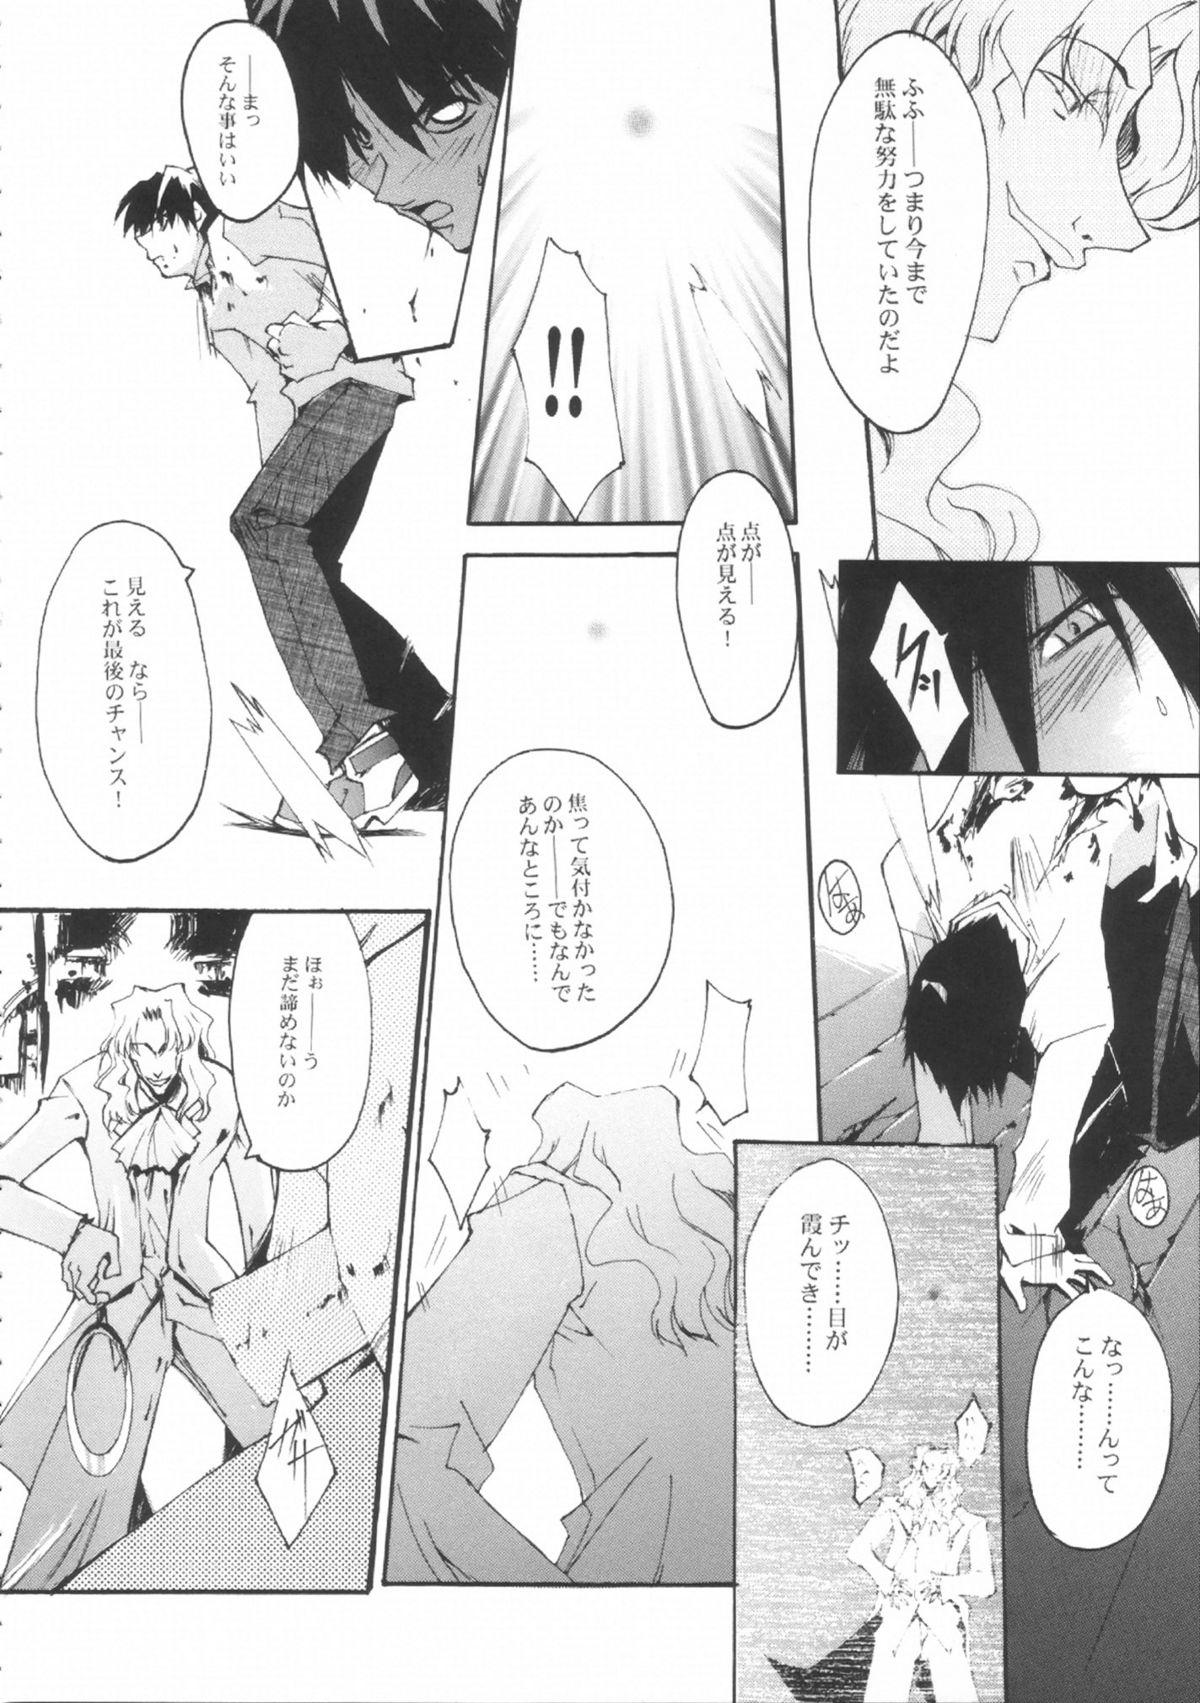 Cdmx NIGREDO LUNA - Tsukihime Fantasy - Page 9